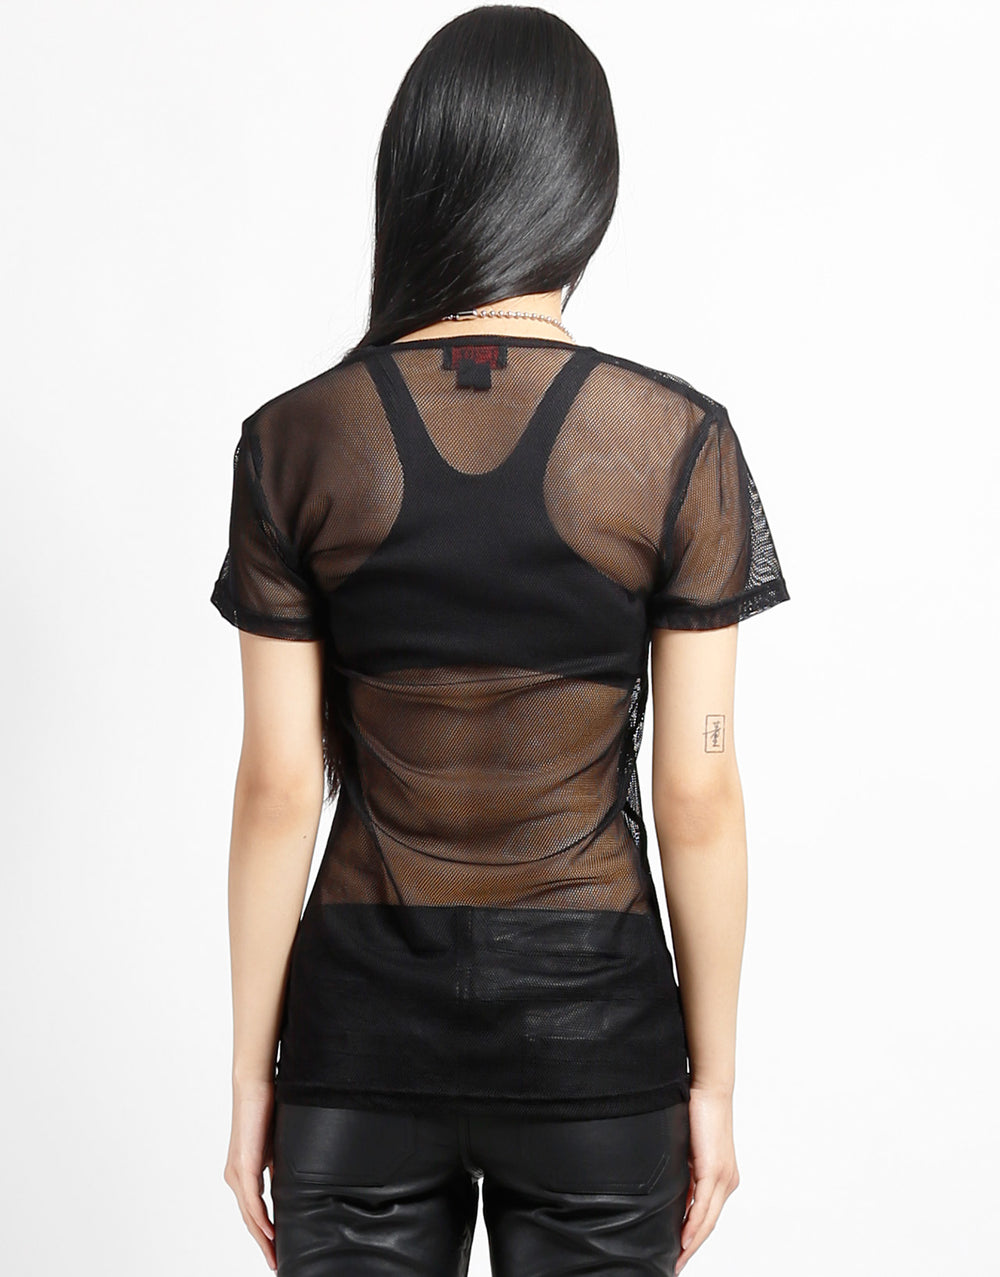 Black Fishnet shirt unisex one size